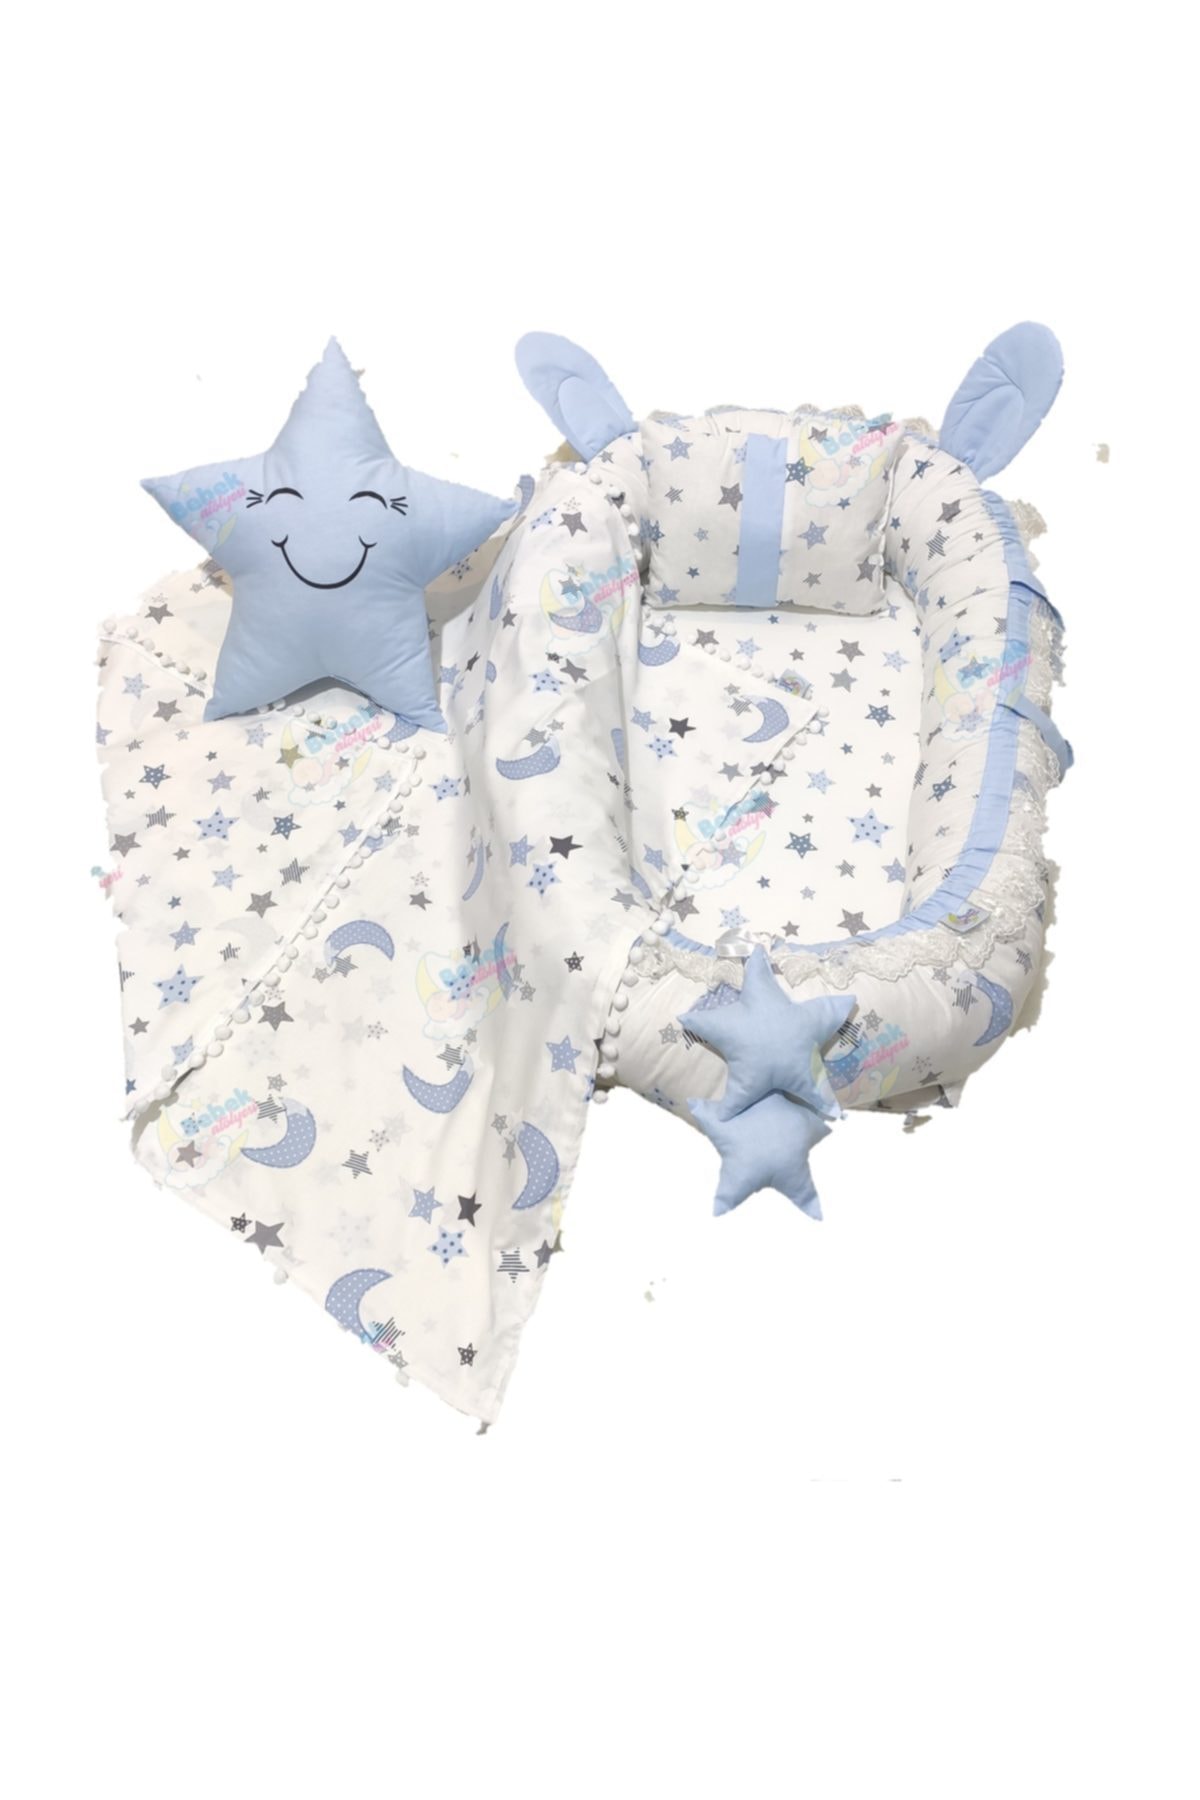 Bebek Atölyesi Mavi Beyaz Yıldız Desenli Kulaklı Ponpon Battaniye Ve Yıldız Yastık Seti